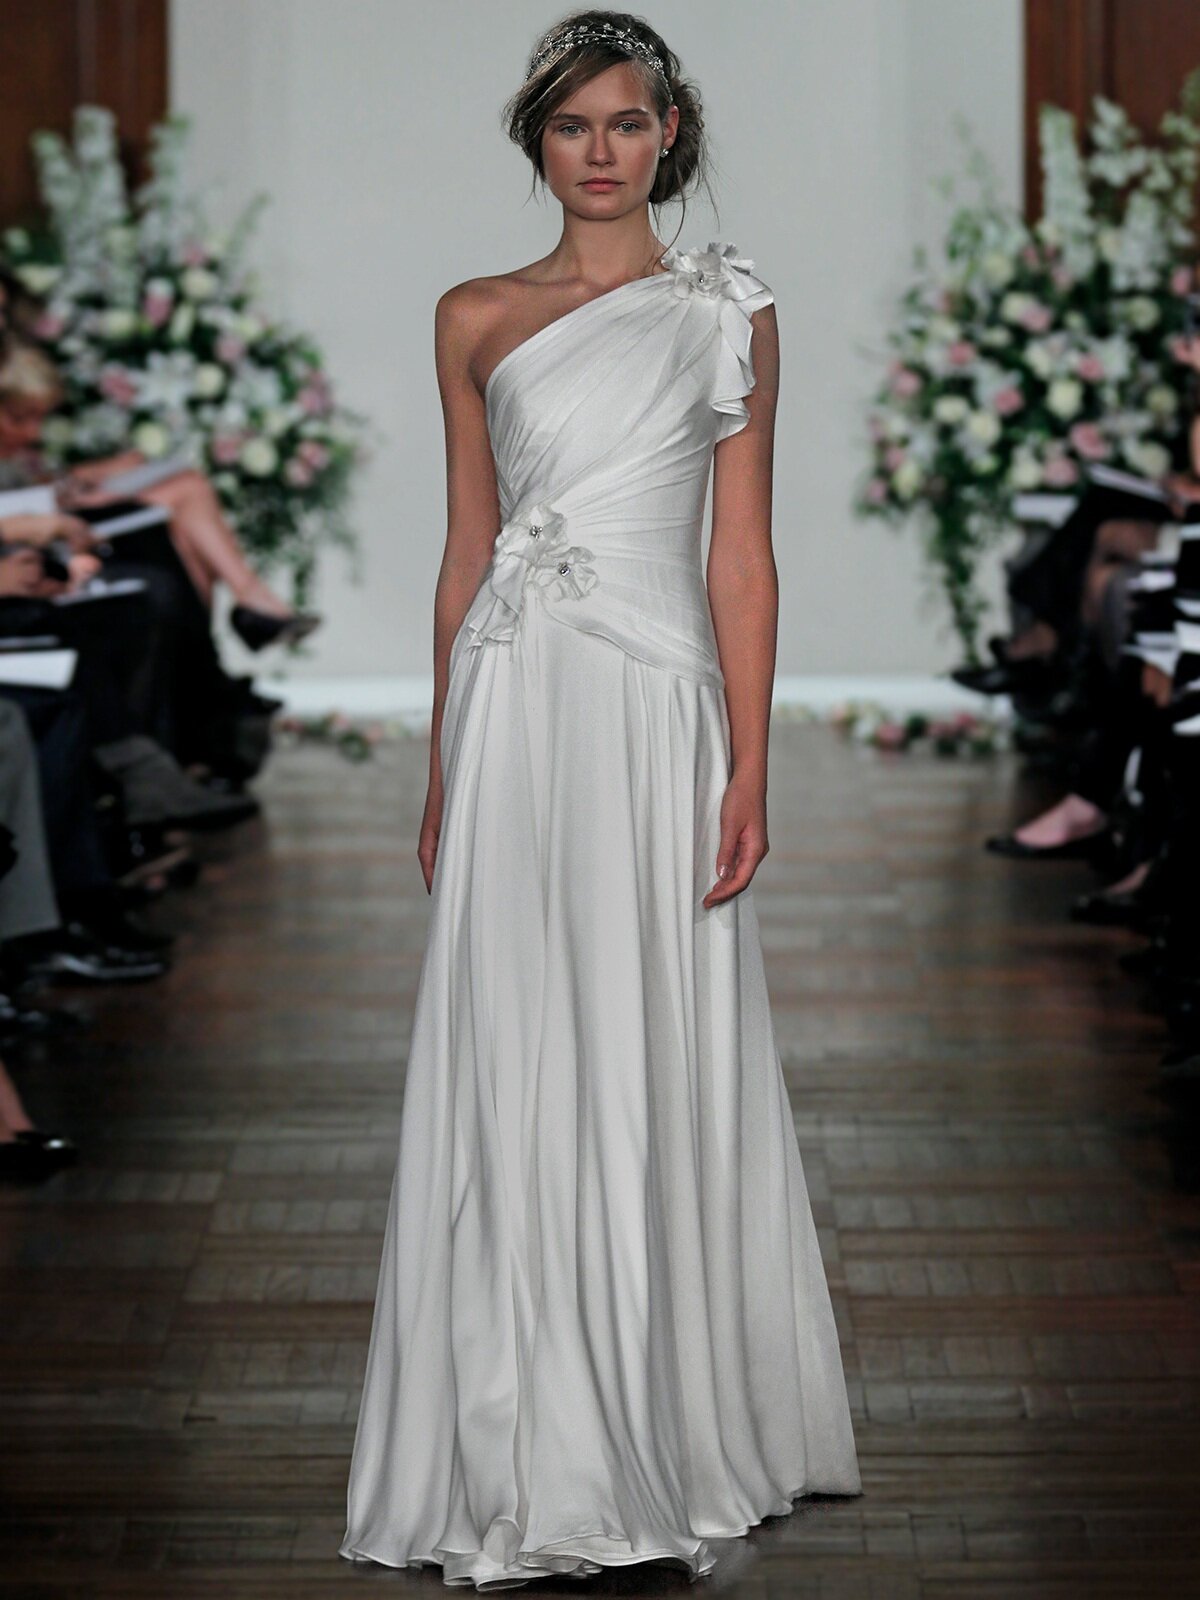 Jenny Packham wedding dresses 2013 Photo - 1